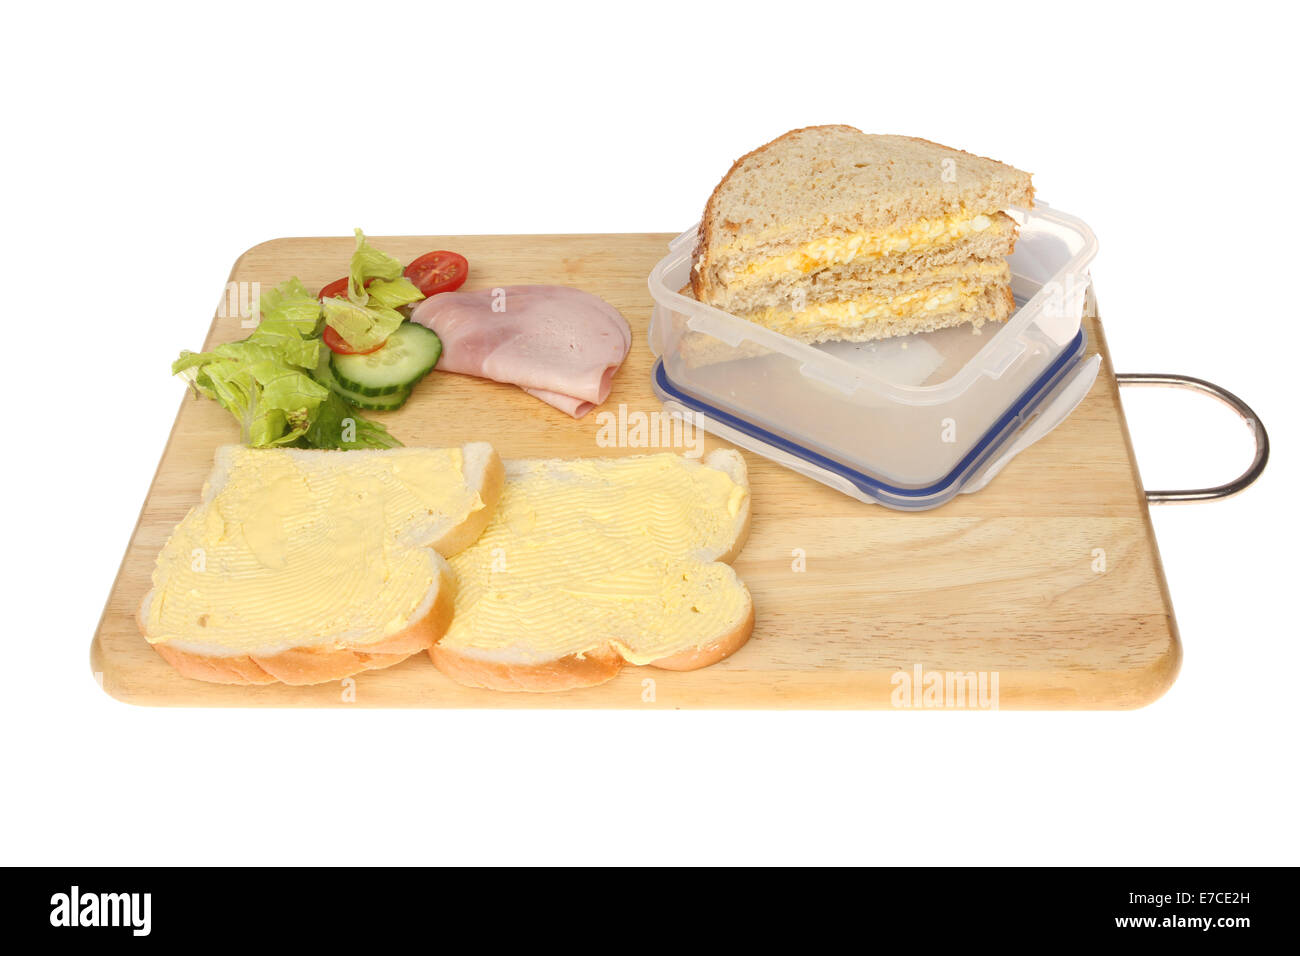 Sandwiches und Zutaten auf einem hölzernen Essen Vorbereitung Brett isoliert gegen weiß Stockfoto